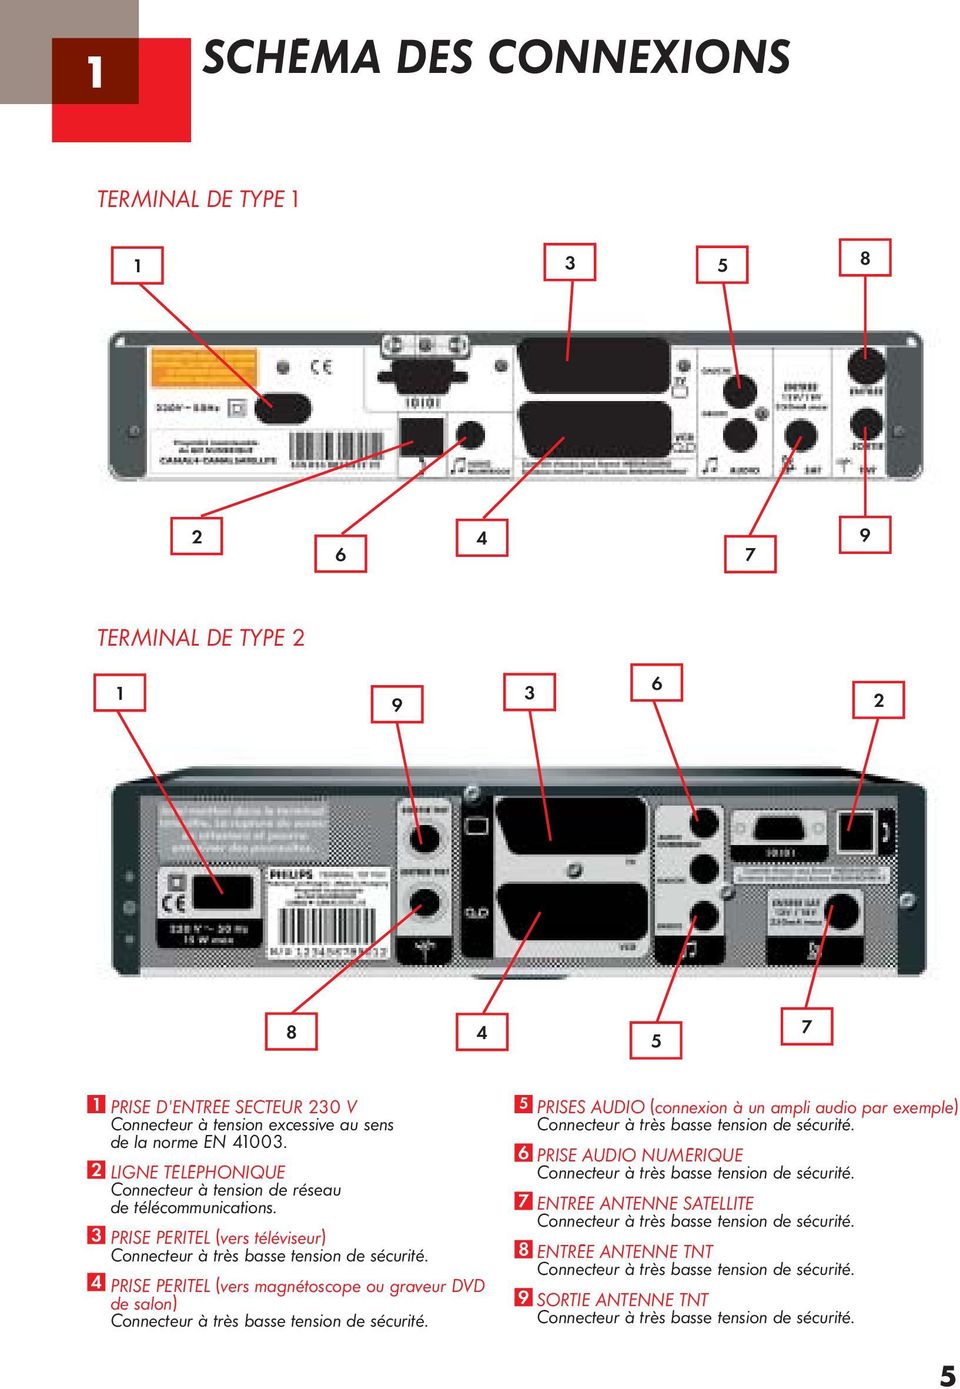 4 PRISE PERITEL (vers magnétoscope ou graveur DVD de salon) Connecteur à très basse tension de sécurité.